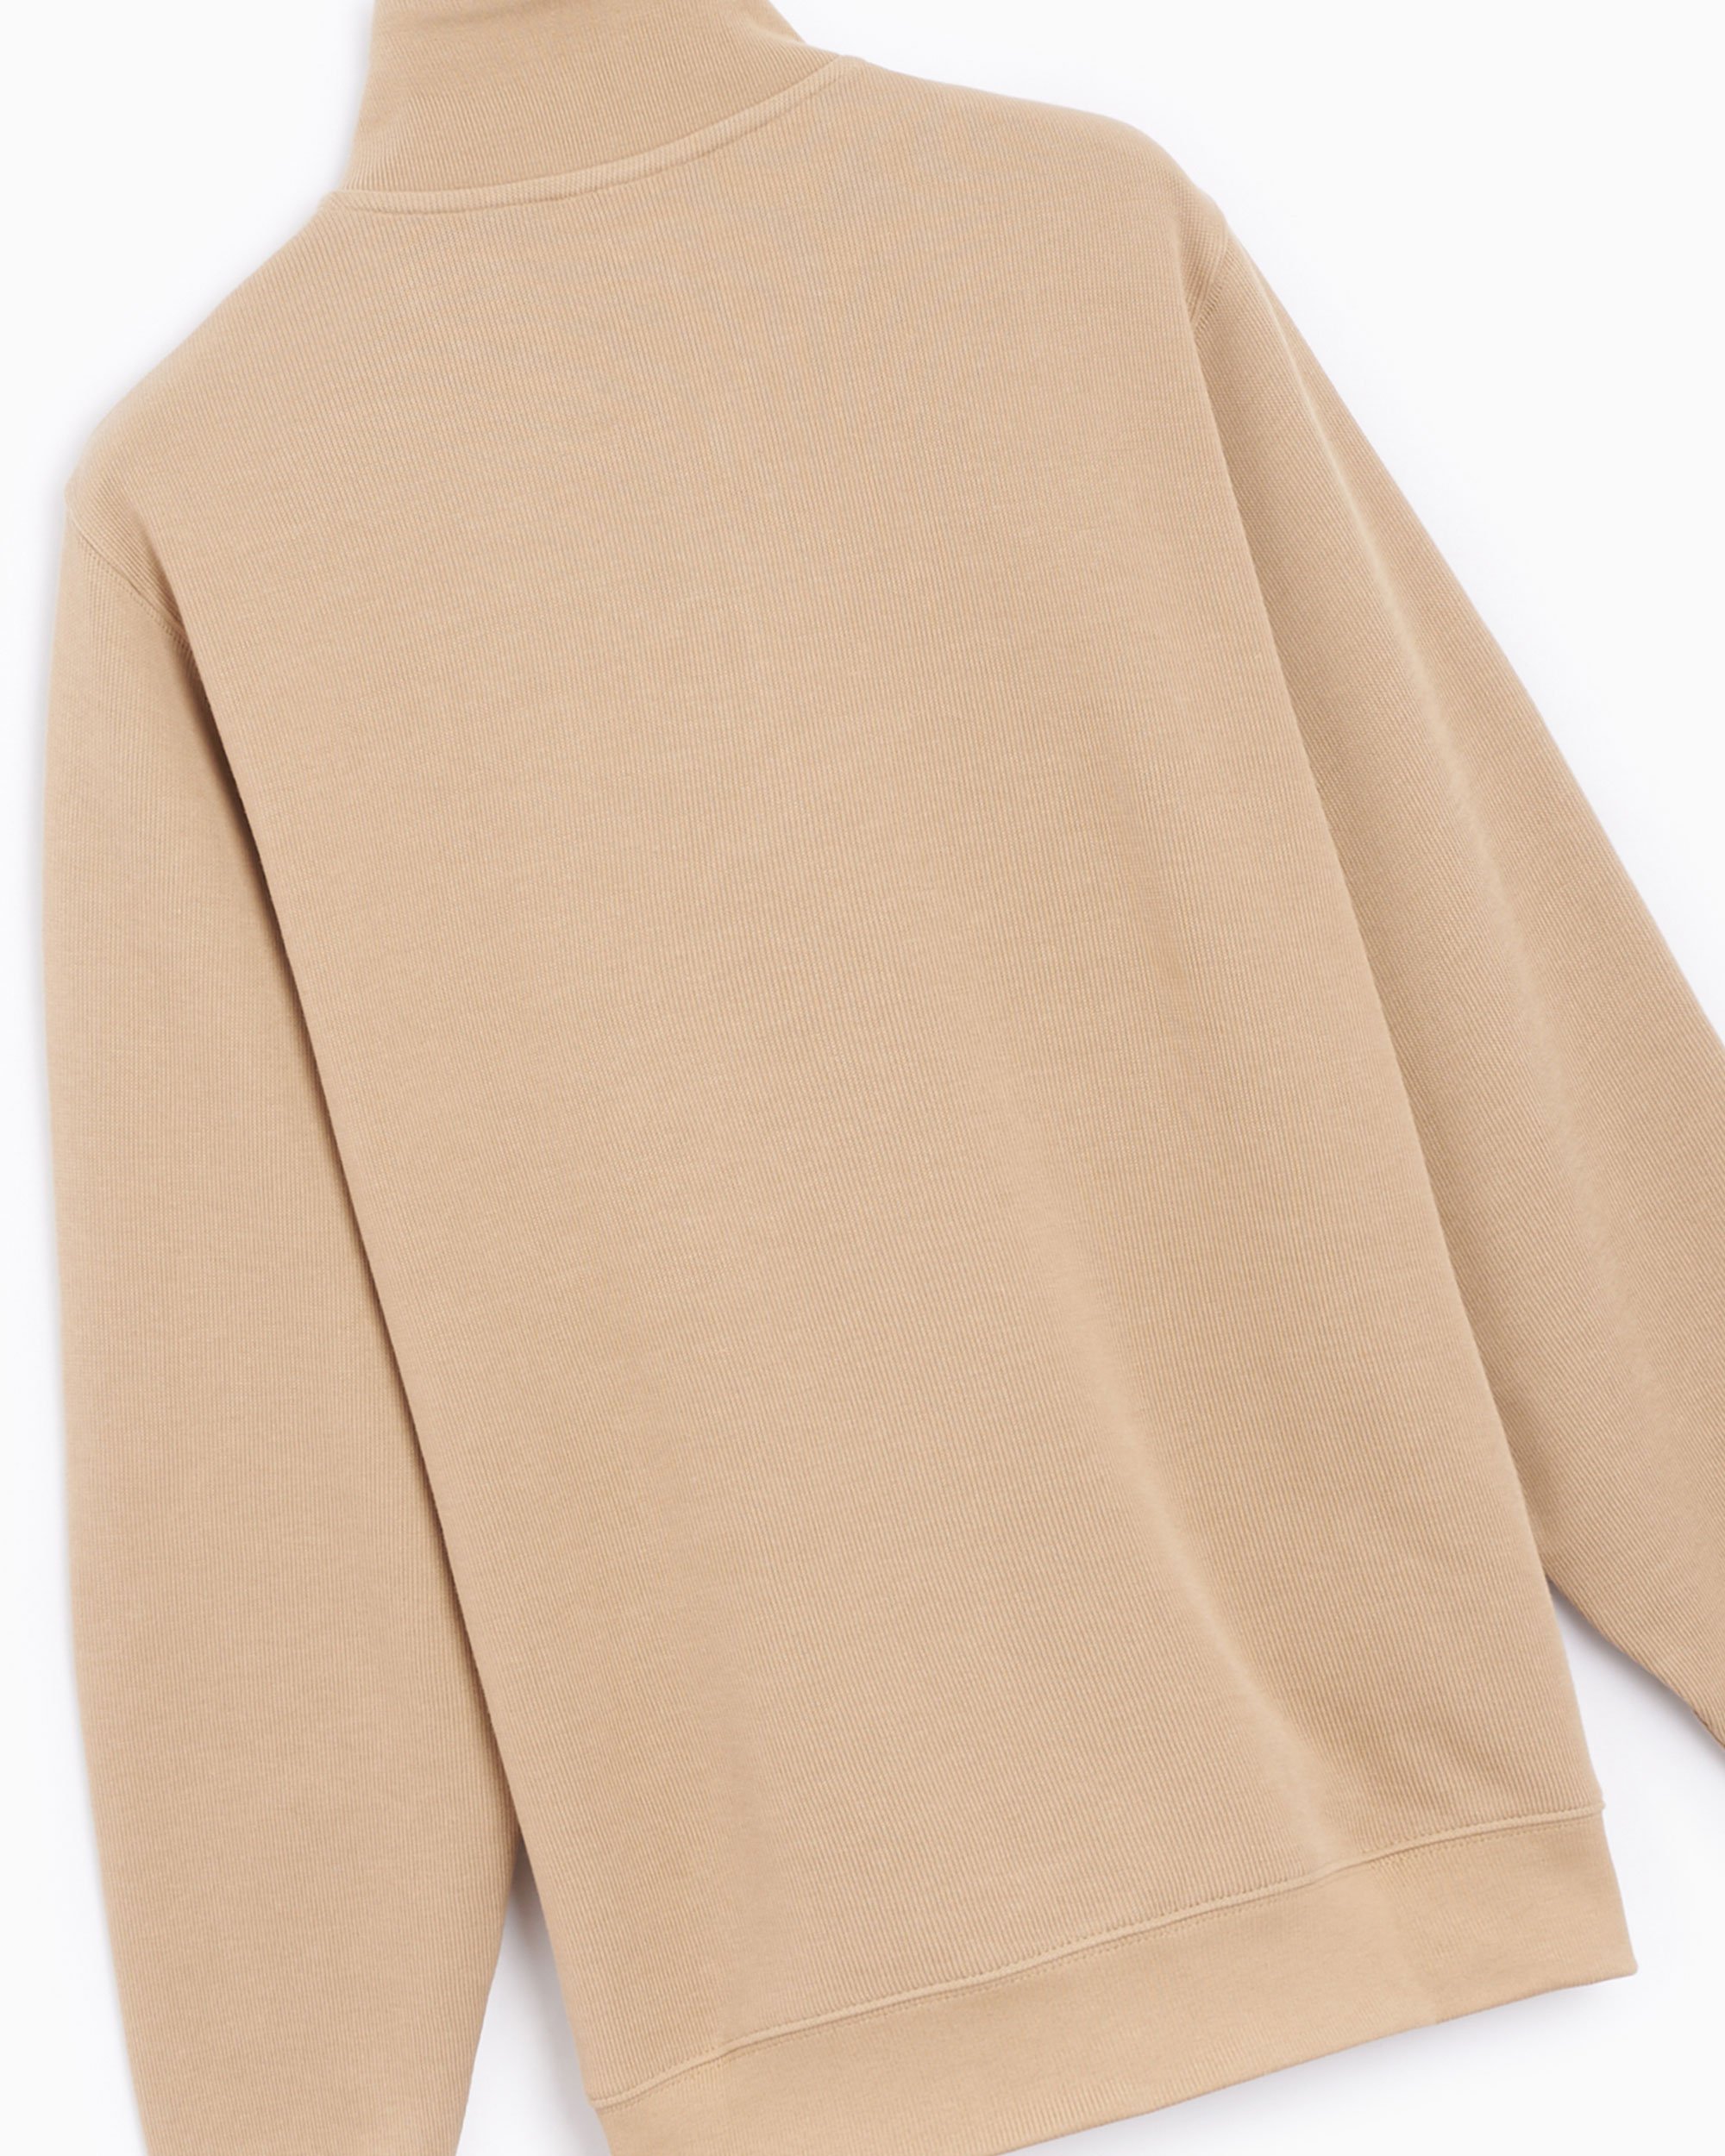 Lacoste Men's Half Zip Sweatshirt Beige SH1927-00-02S| Buy Online 